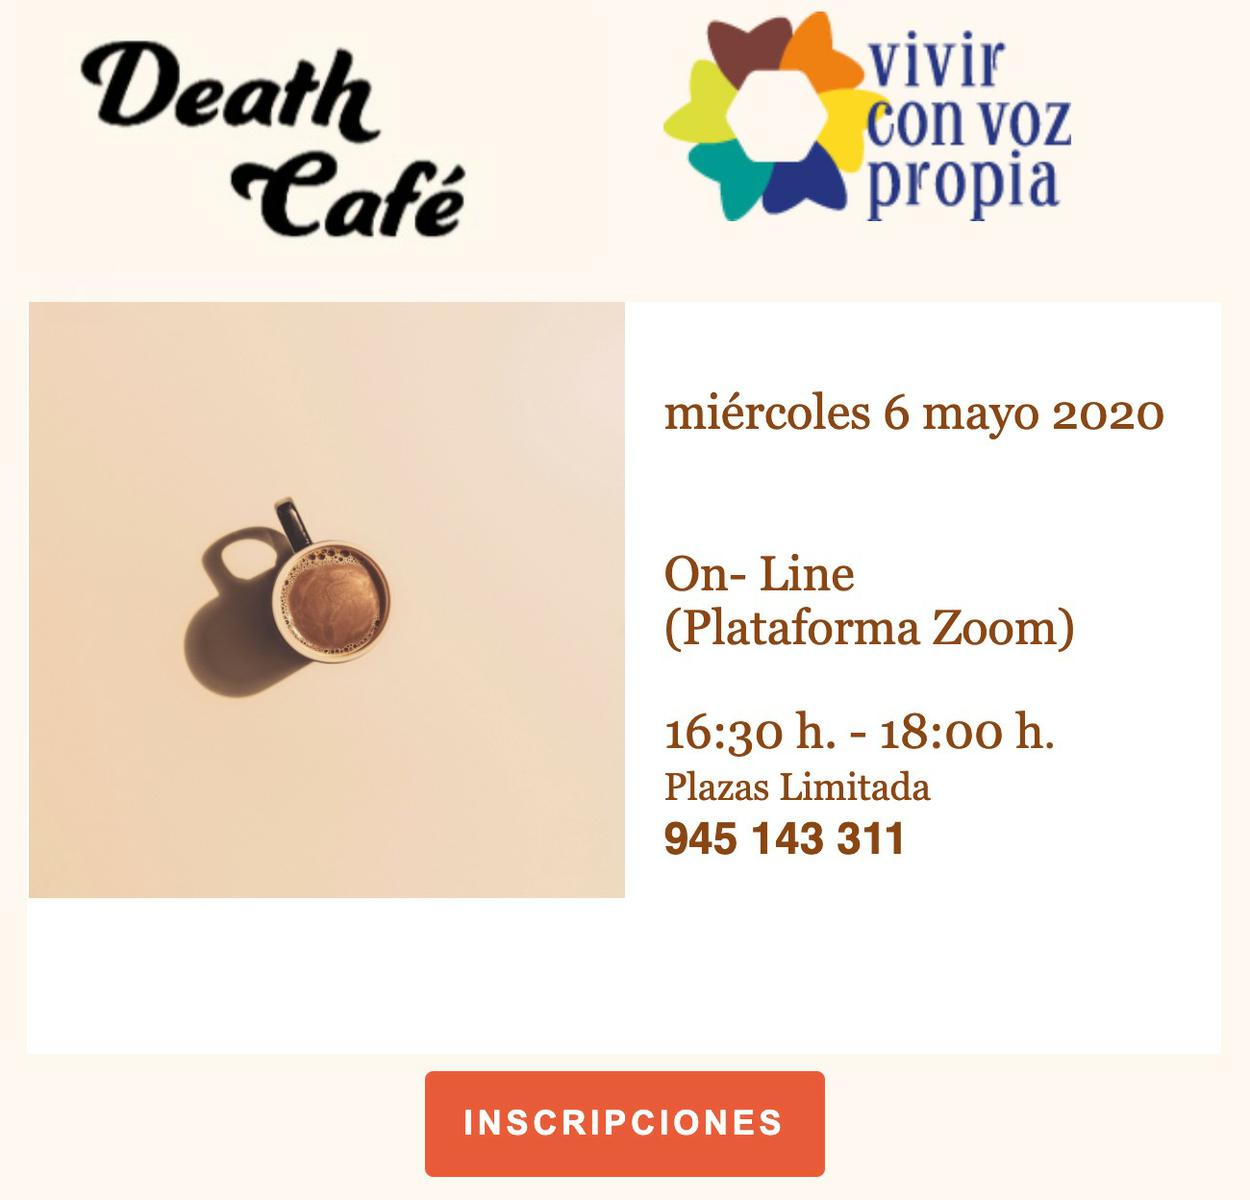 Death Cafe Vitoria-Gasteiz Online